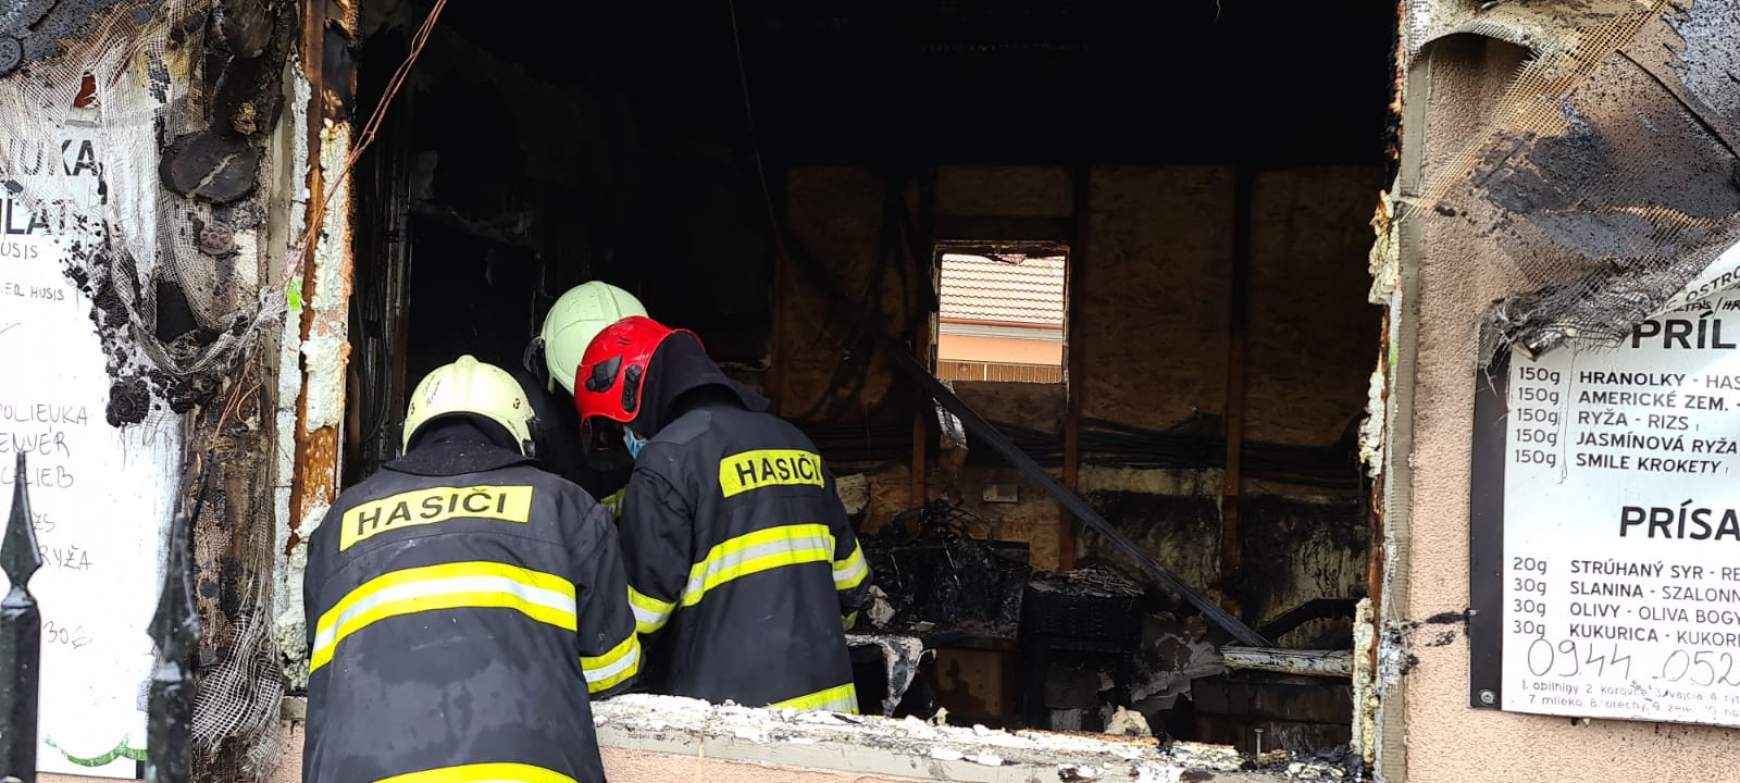 Leégett egy gyorsbüfé Marcelházán, haláleset nem történt